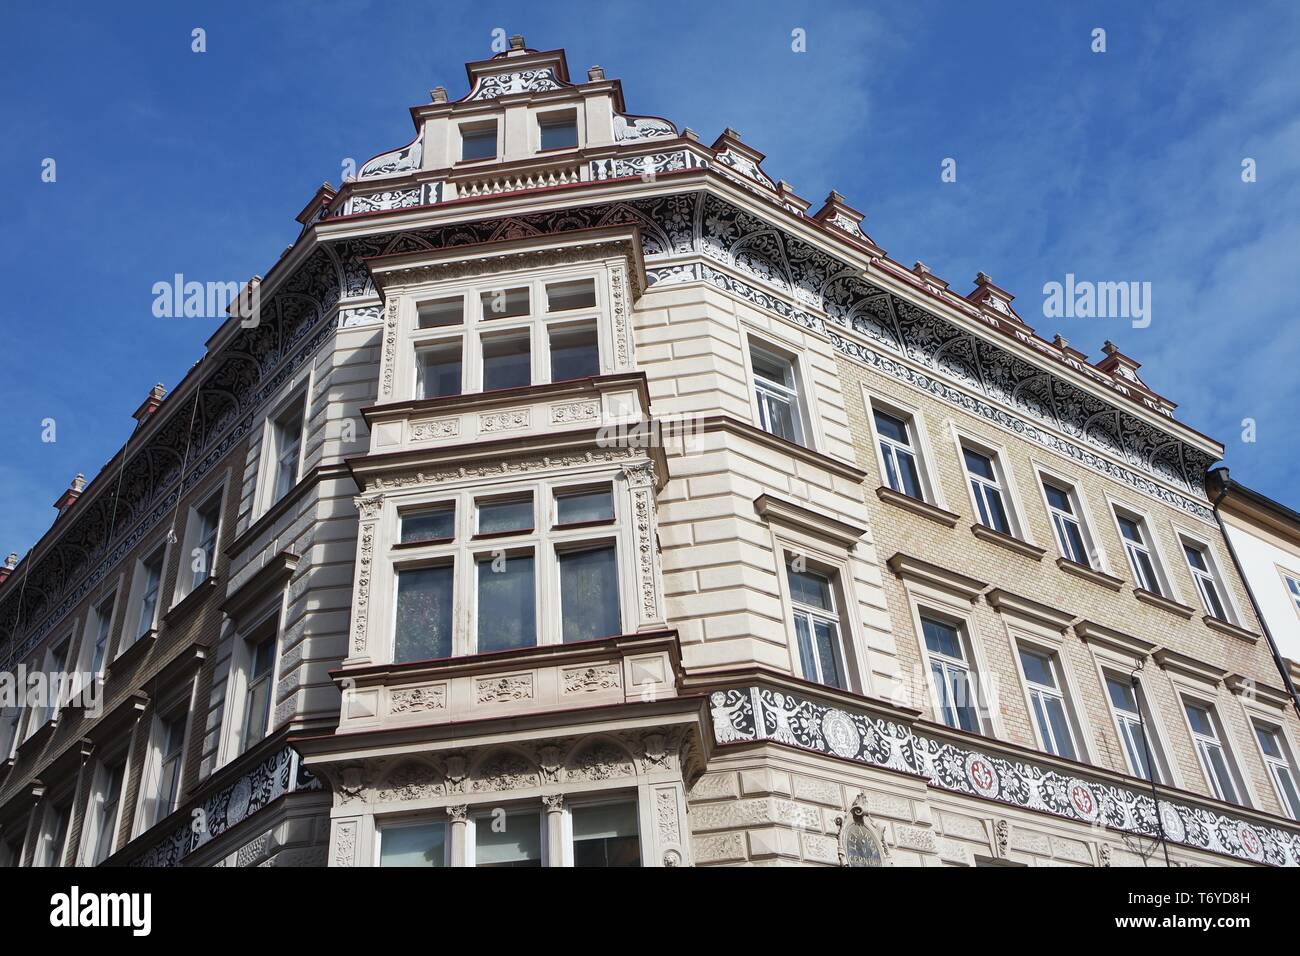 House facade with sgraffito curbs, Prague Stock Photo